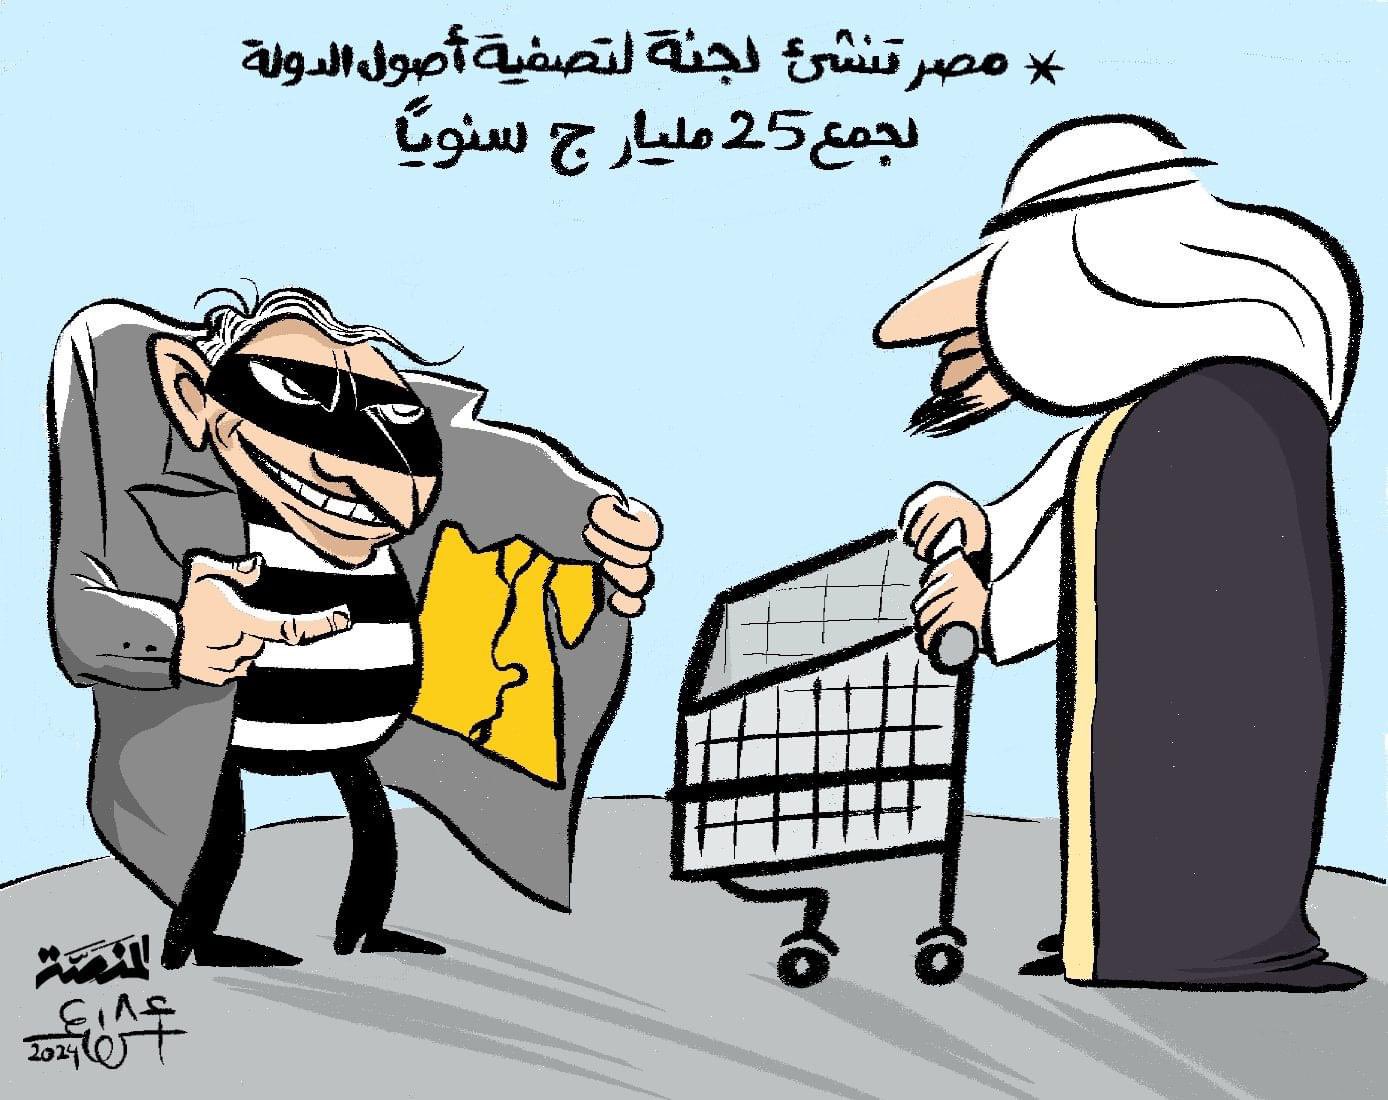 Egyptian cartoonist arrested blindfolded